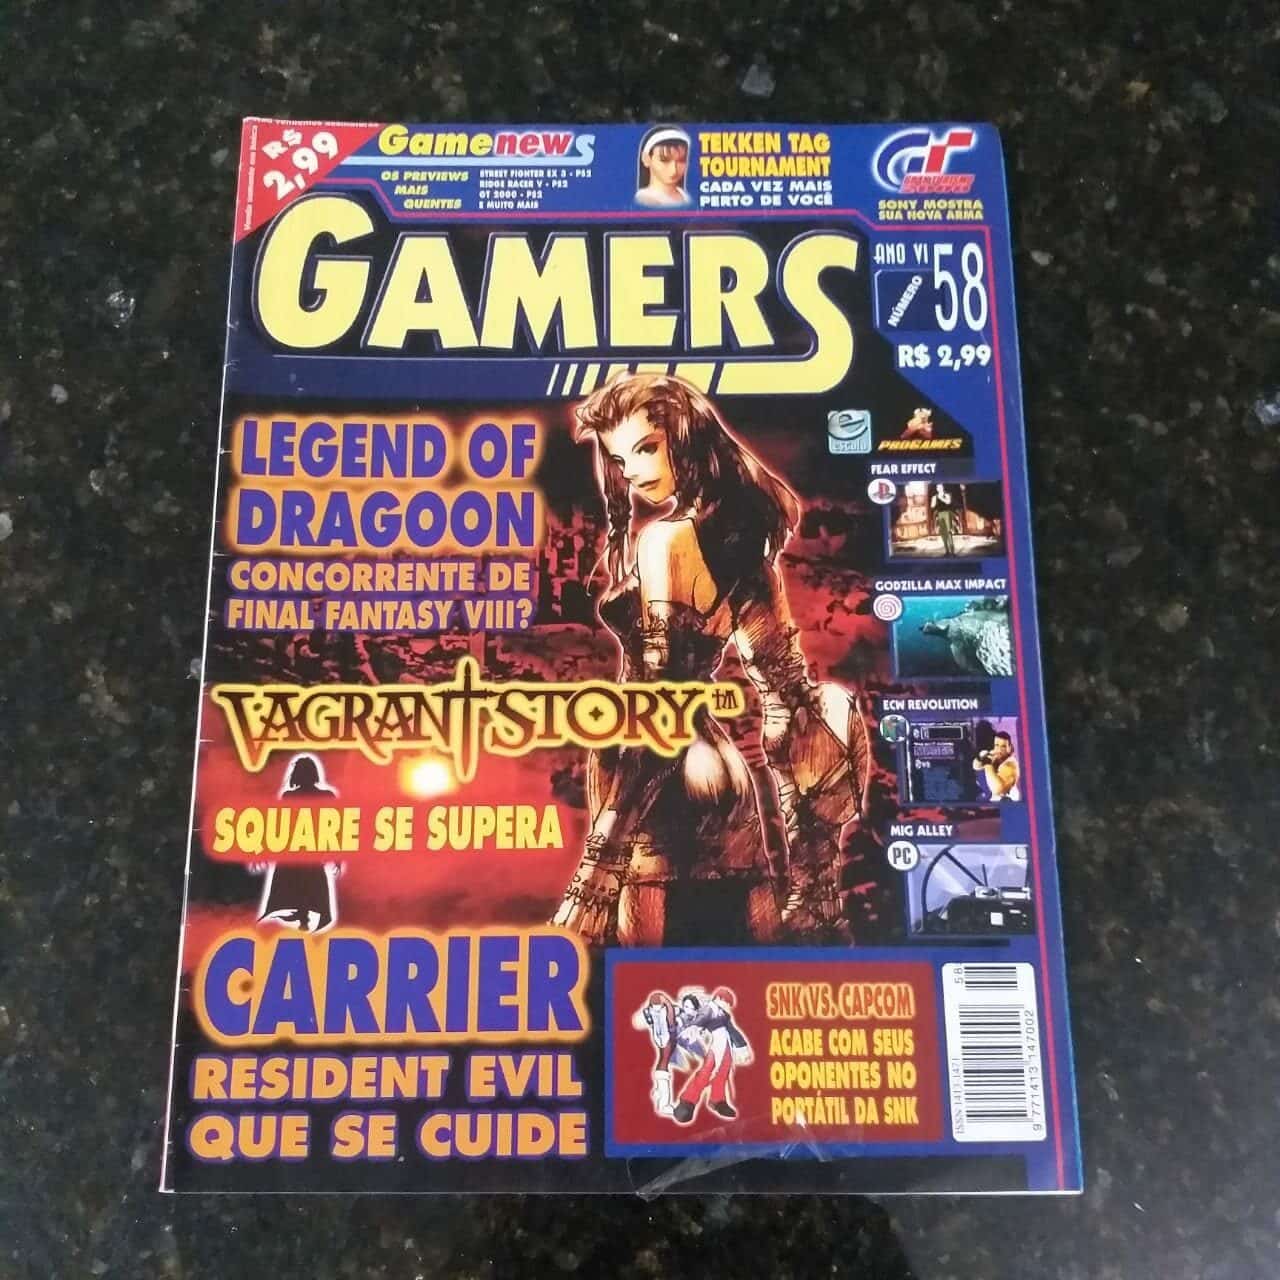 Super Game Power Nº 71 - Capa Parasite Eve II - Fevereiro 2000 (Revista) -  Casa do Colecionador